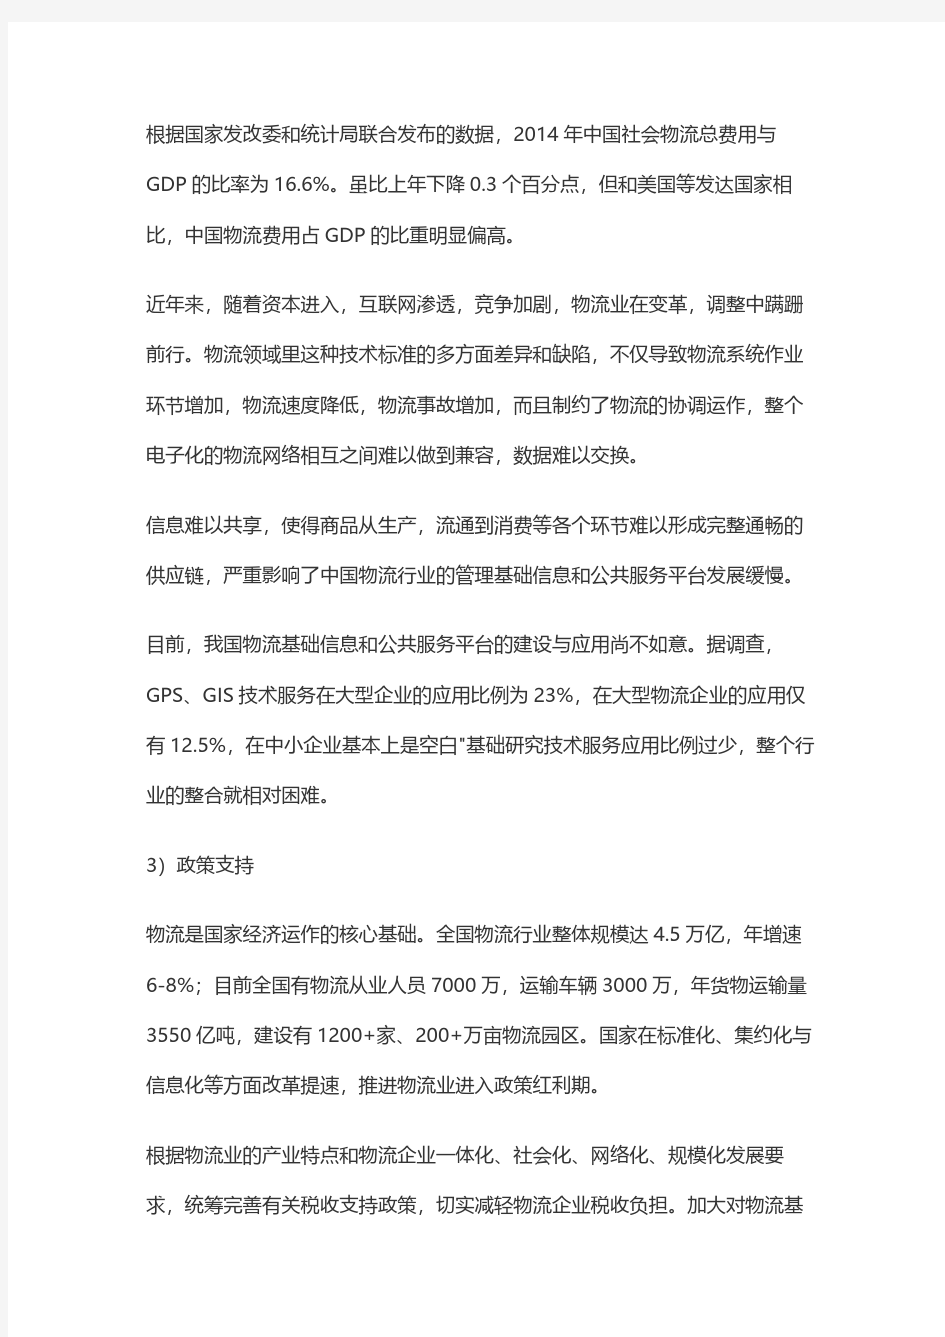 上海卡行天下供应链管理有限公司货运圈系统